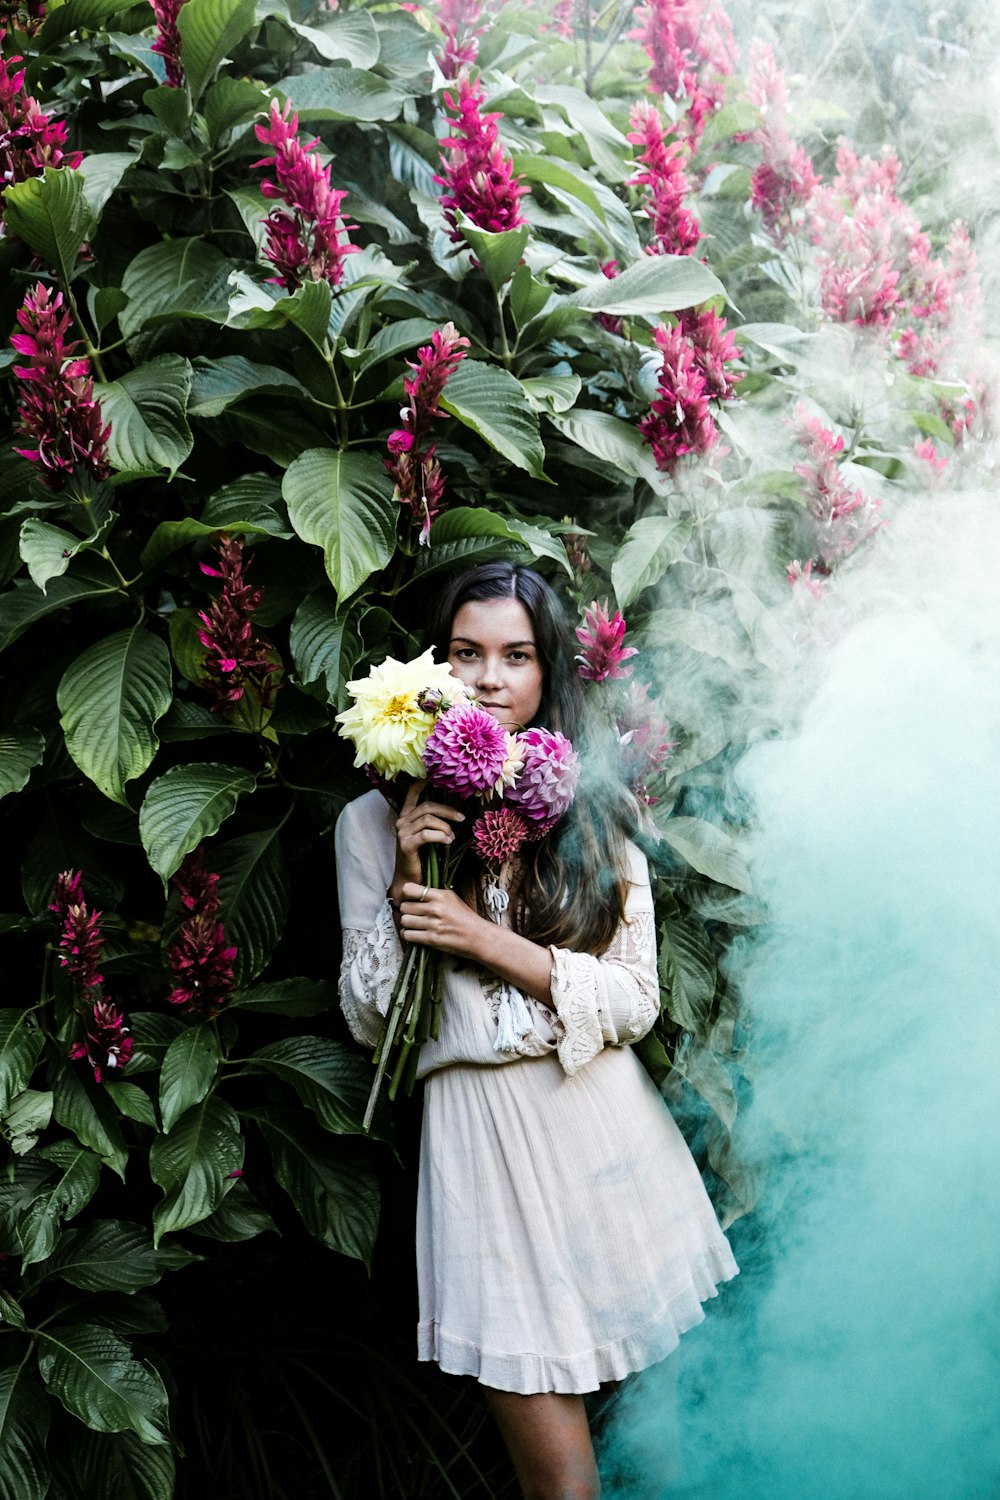 mulher segurando flores amarelas e roxas apoiando-se em plantas verdes com flores